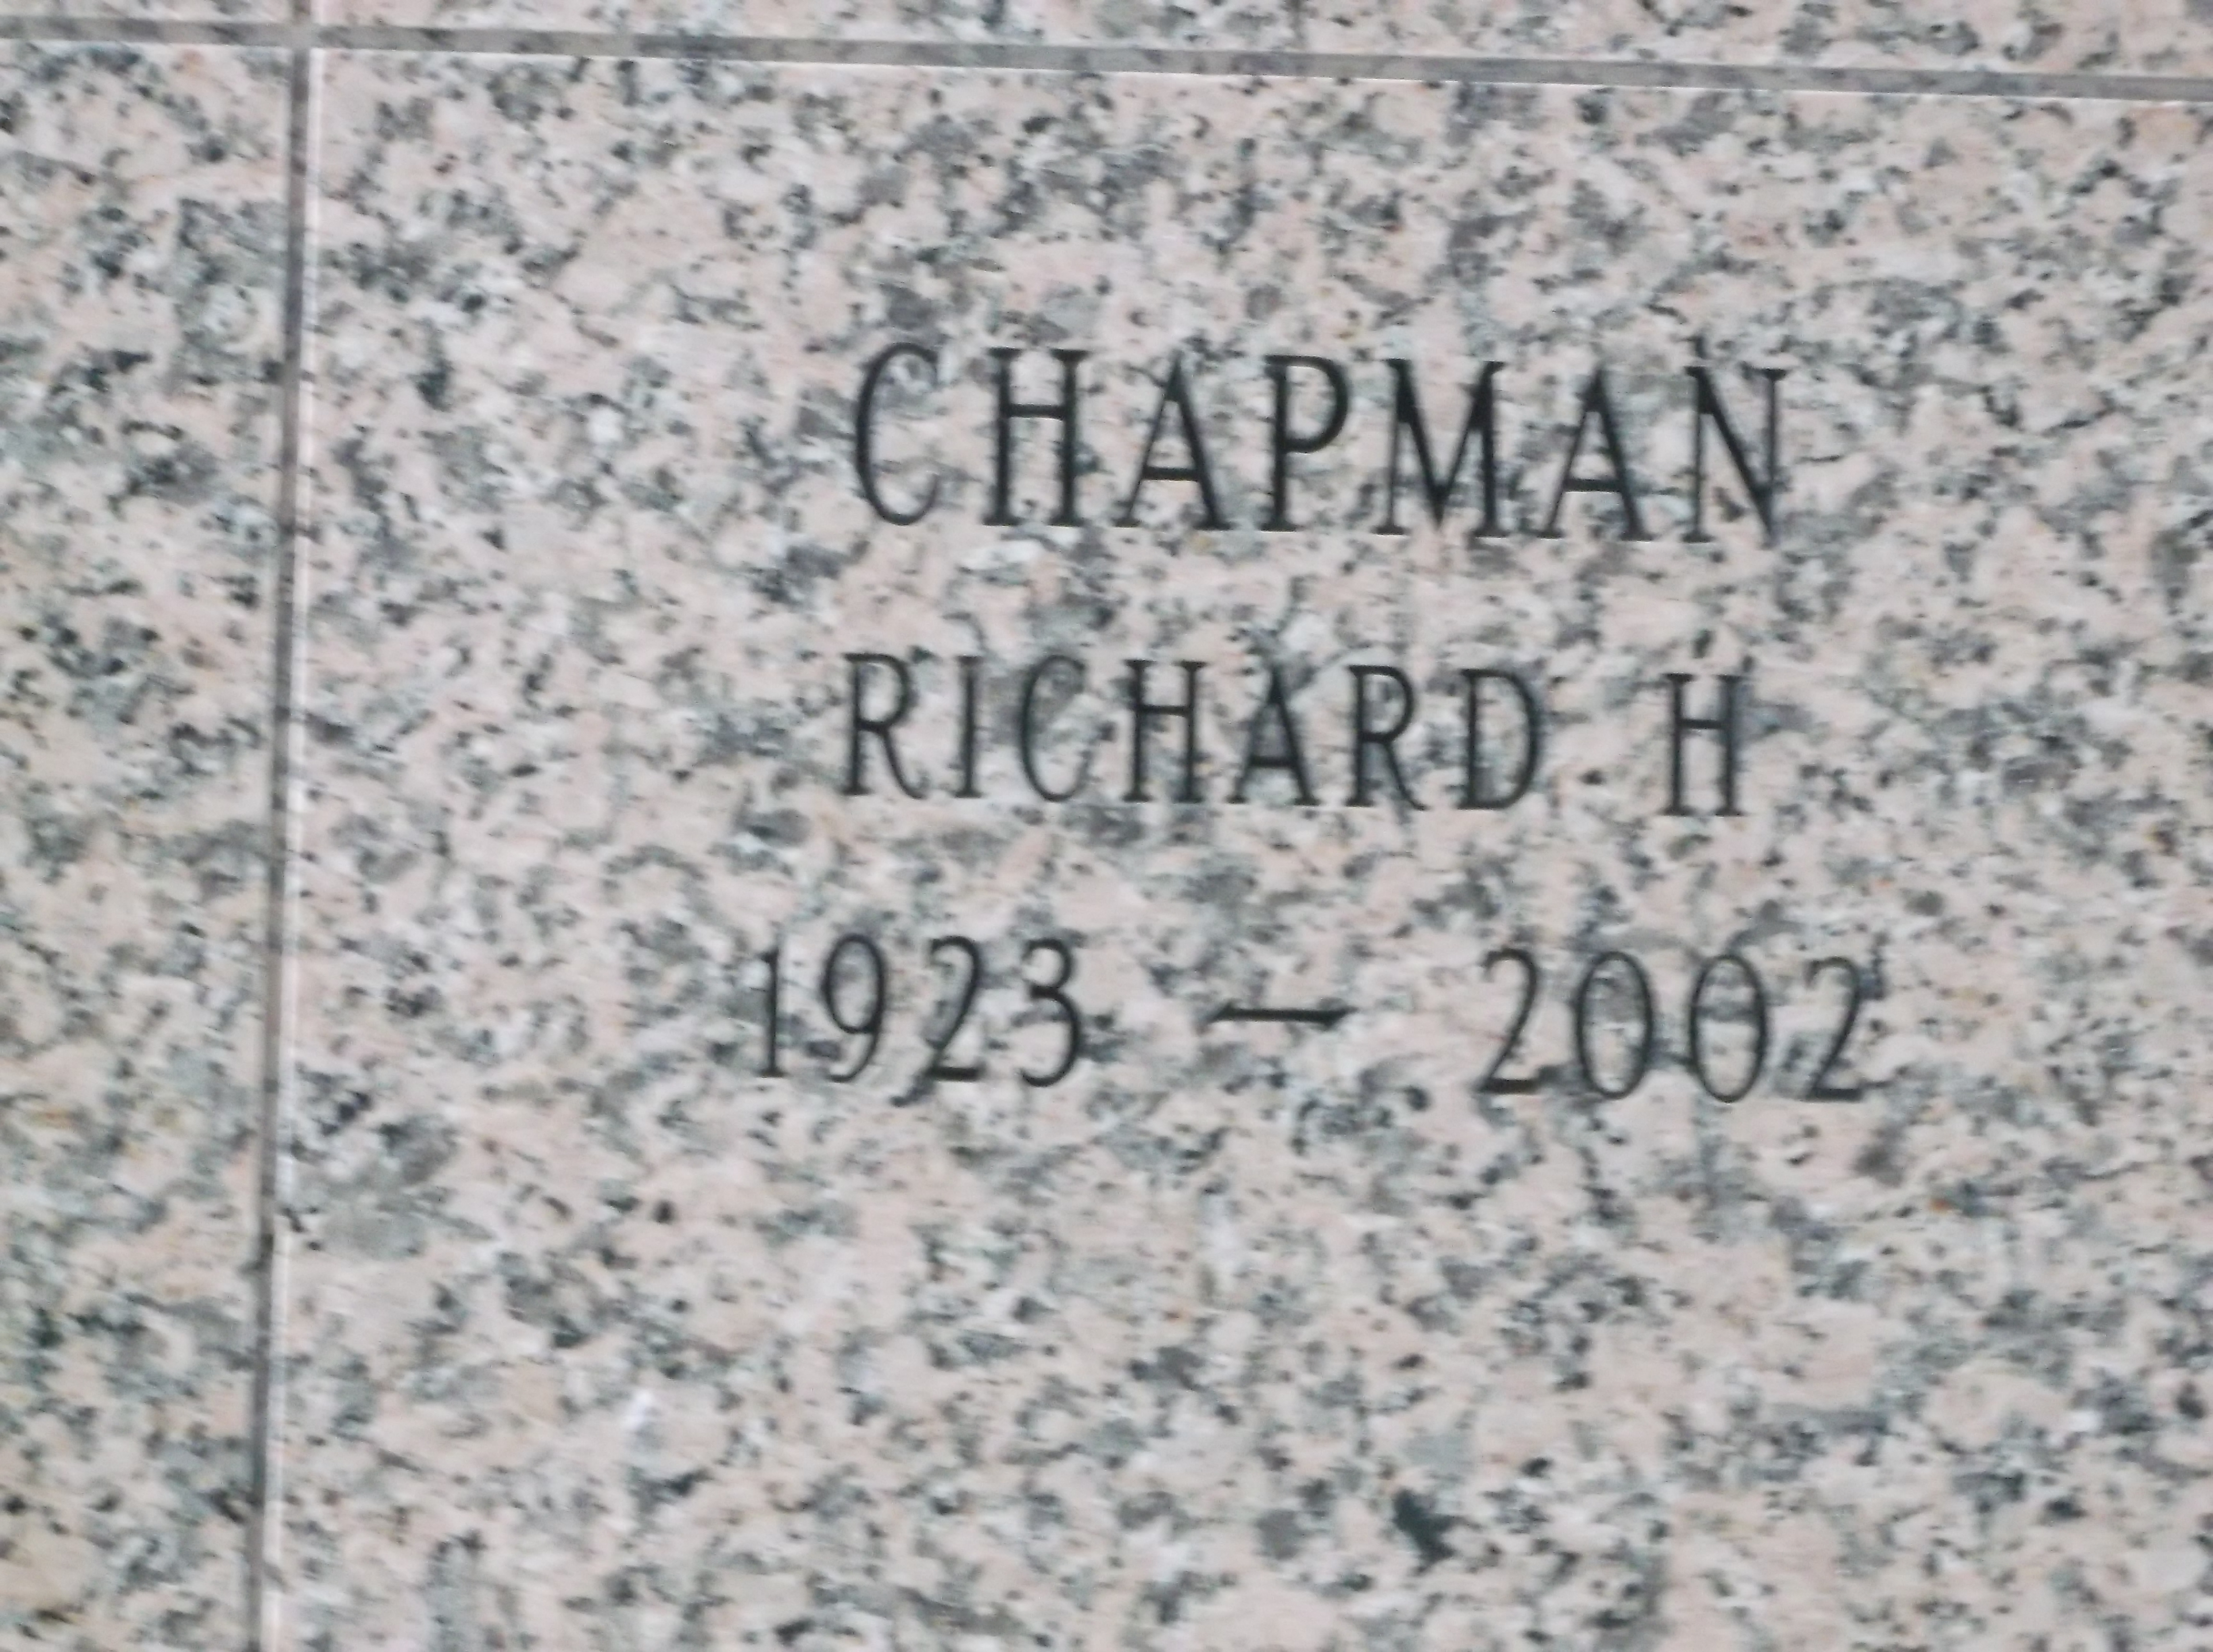 Richard H Chapman